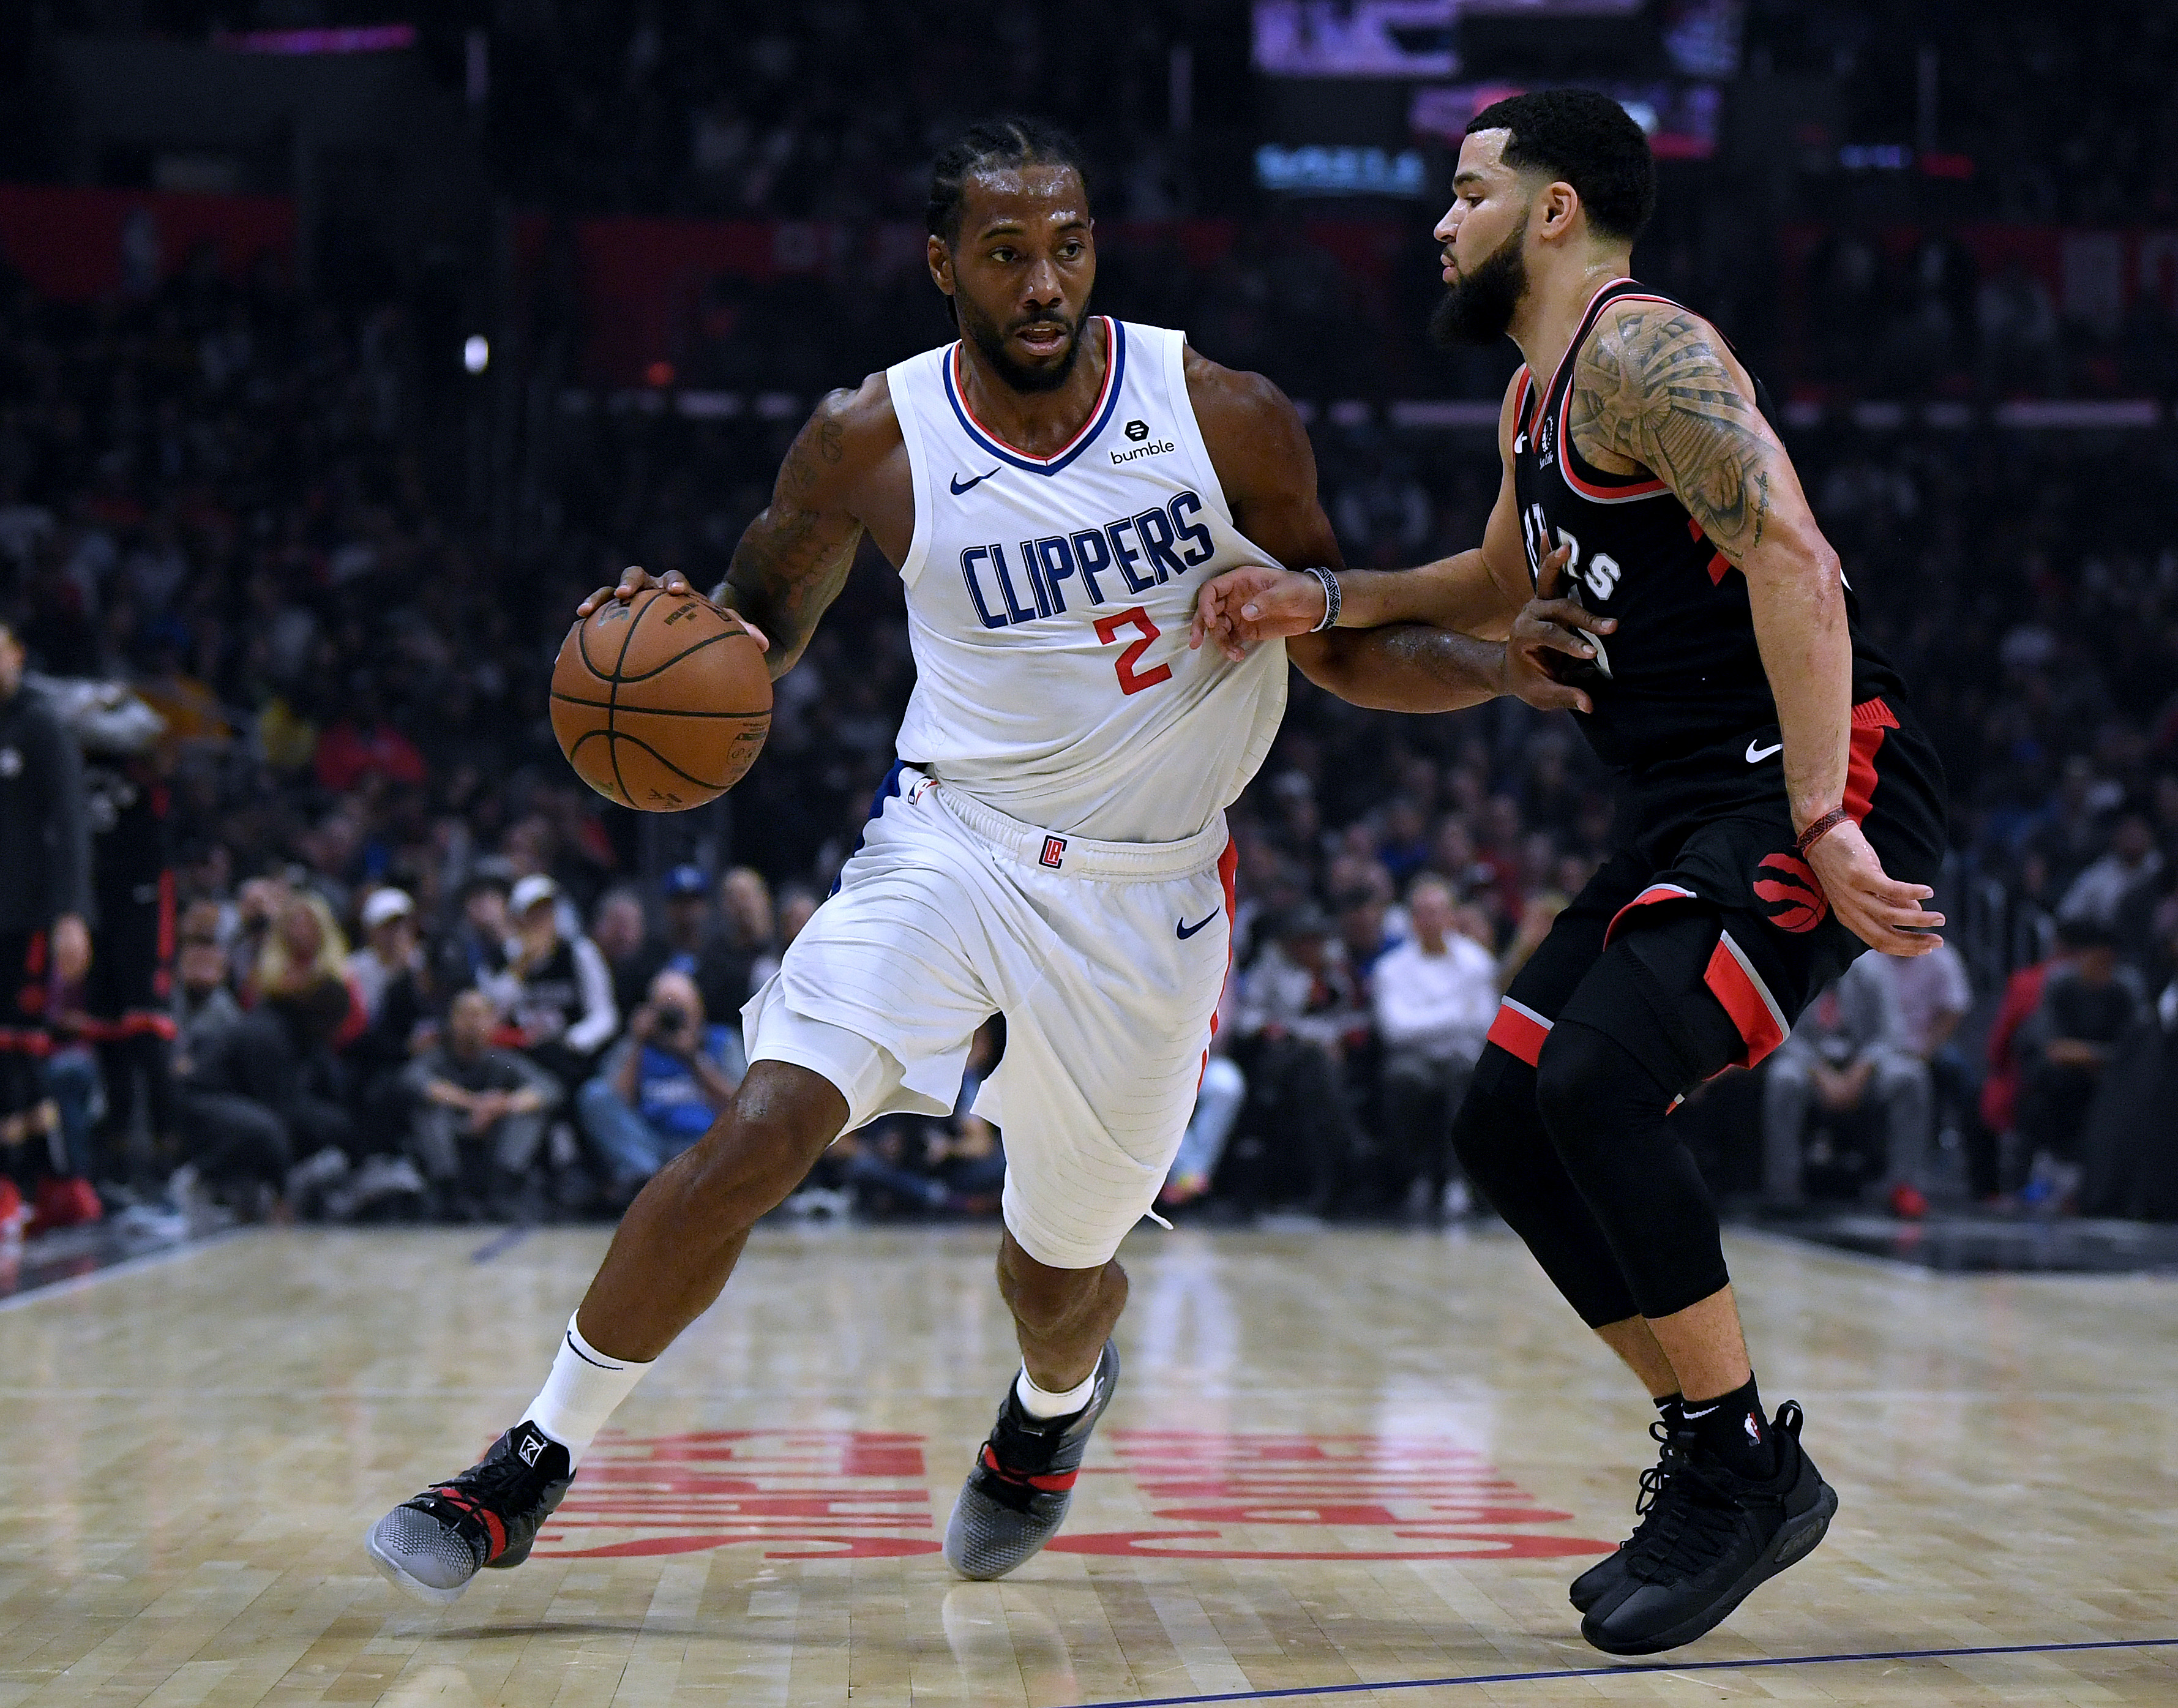 Clippers Best Raptors Despite Leonard’s Struggles Against His Former Team